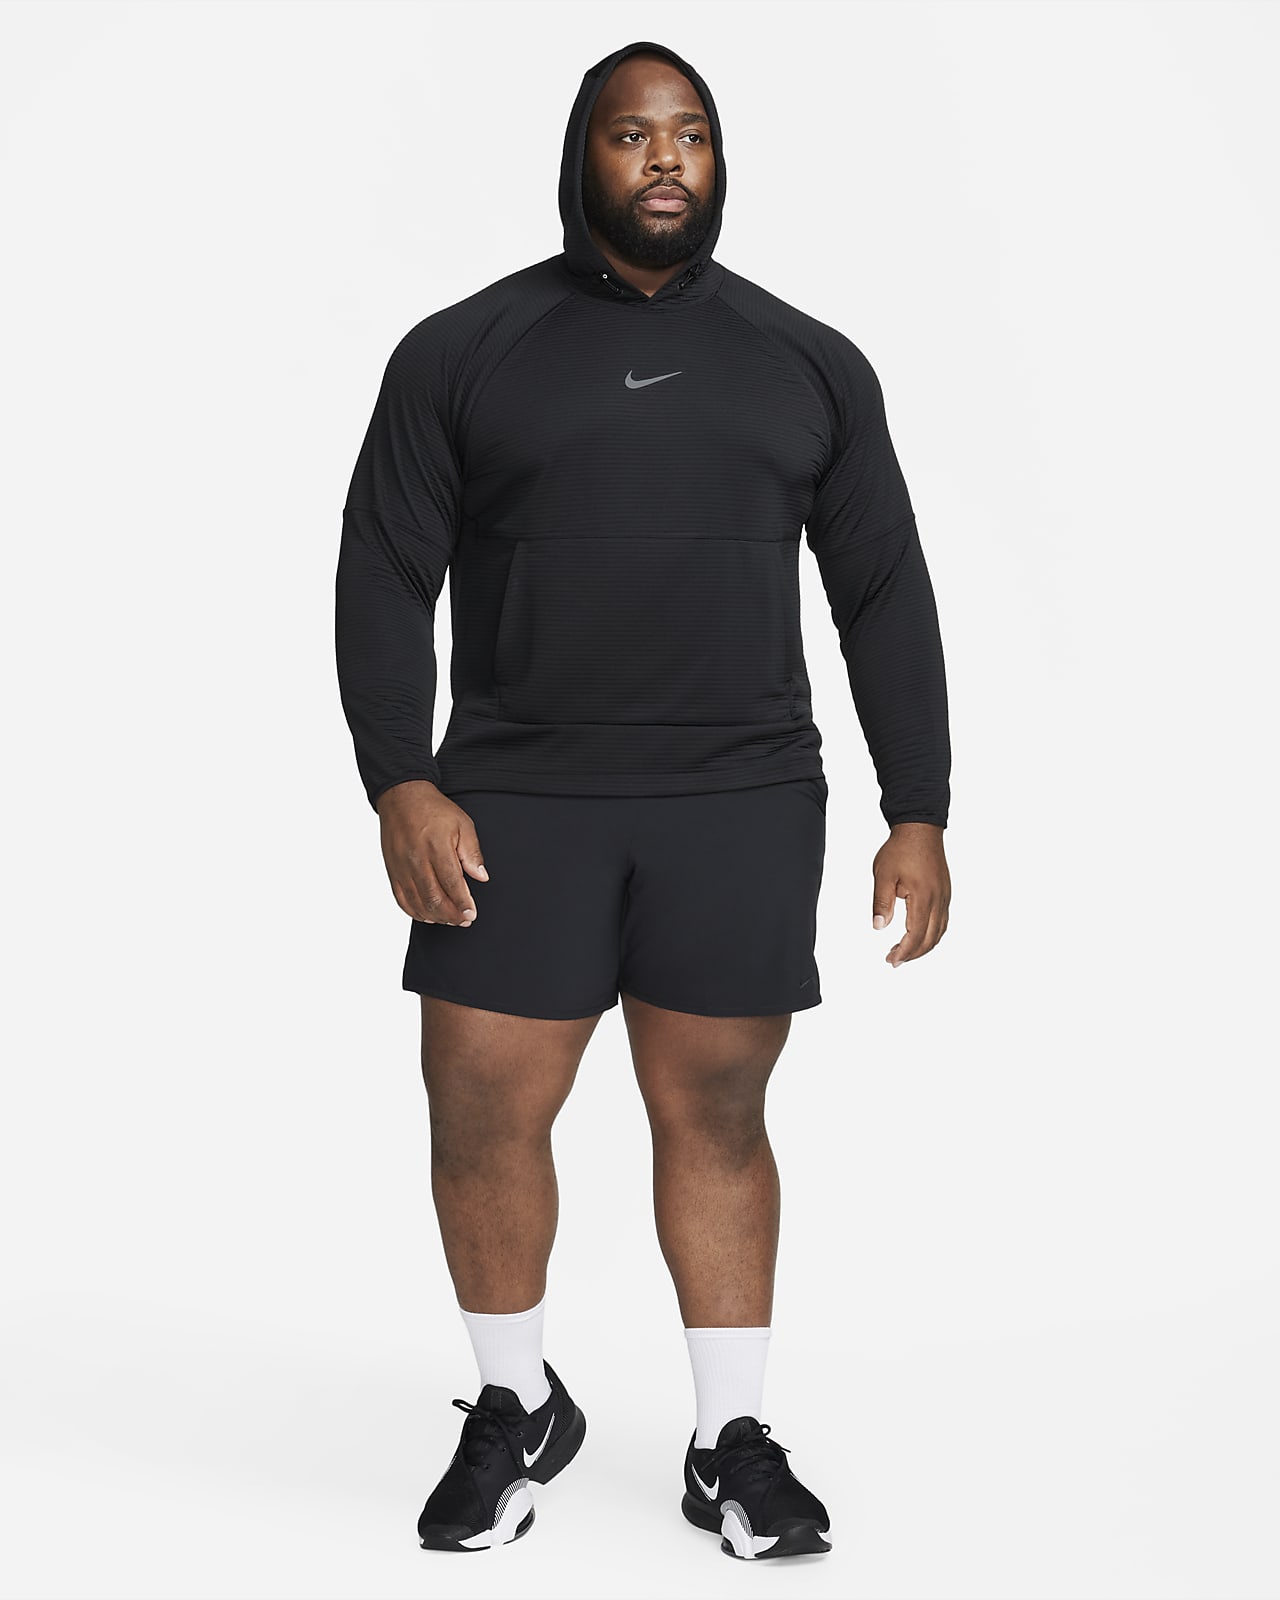 Training & Gym Hoodies & Sweatshirts. Nike CA